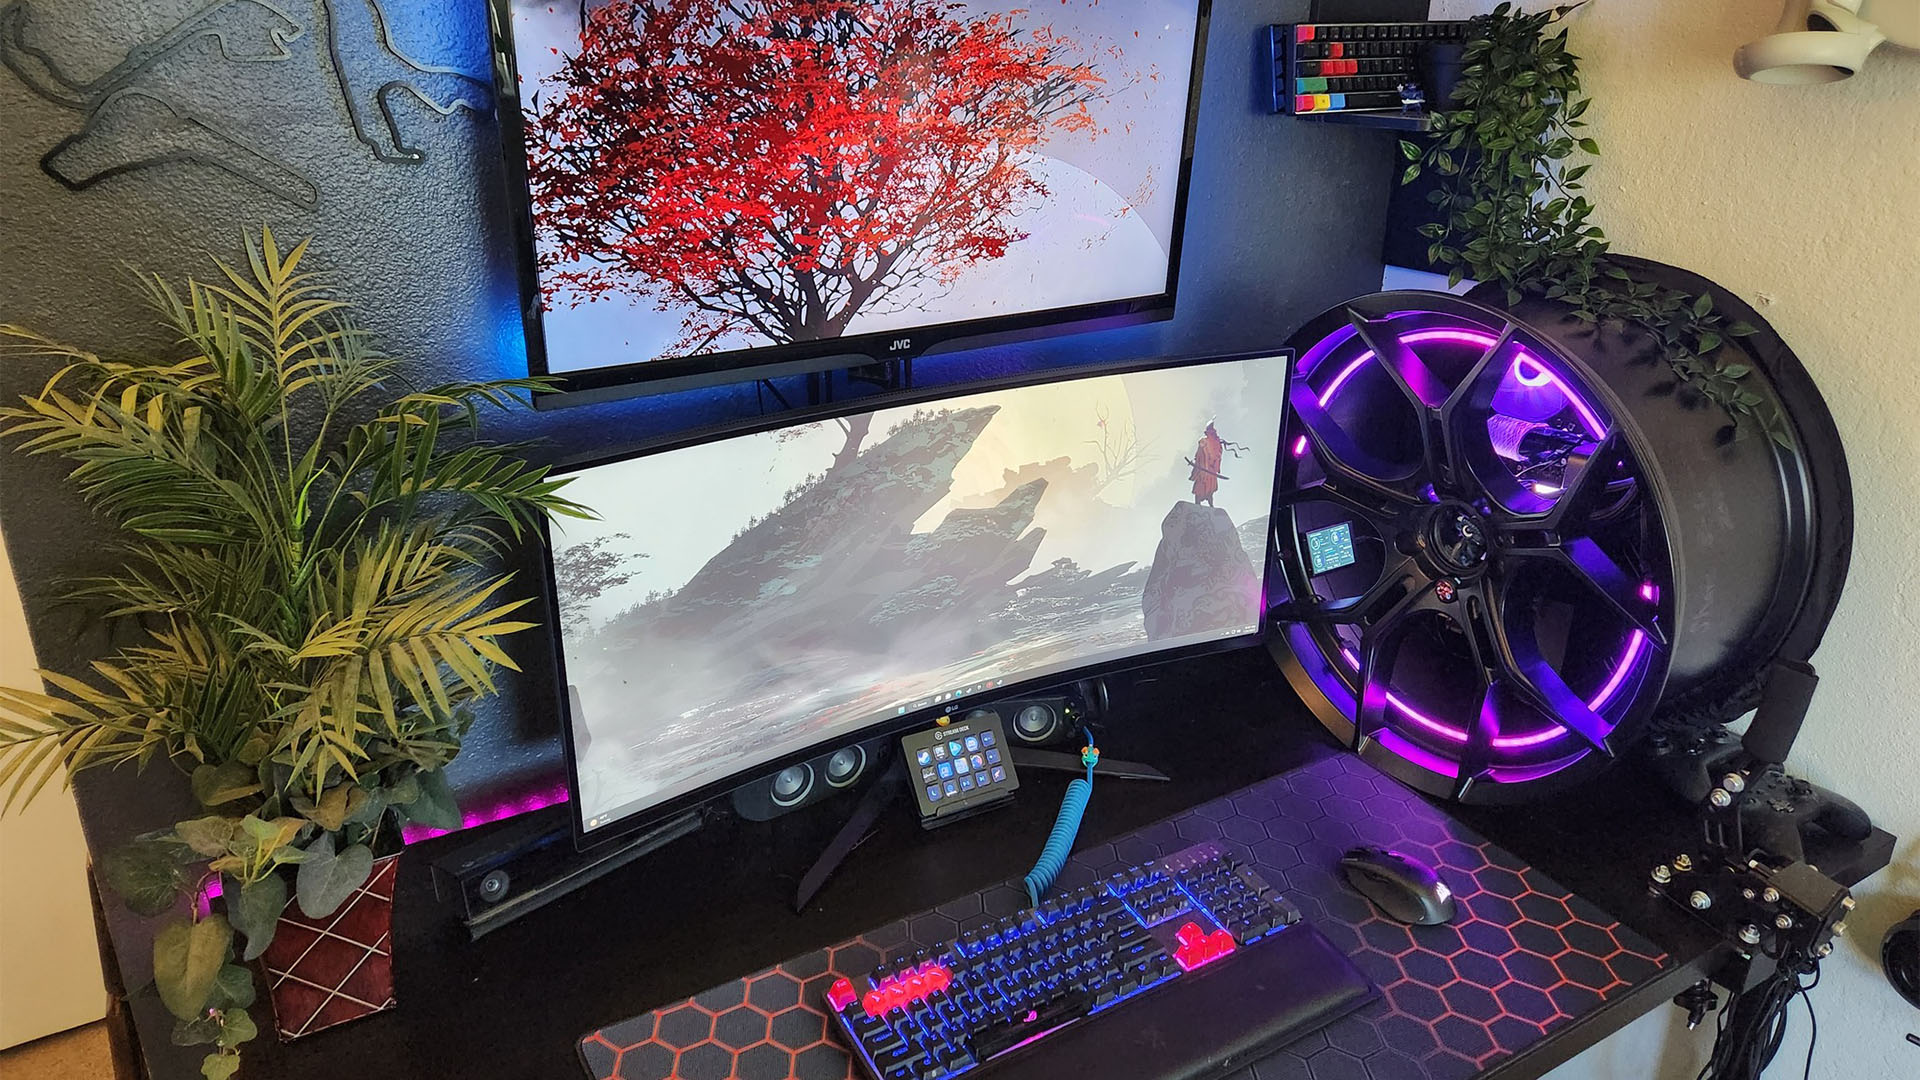 Der Gaming-PC befindet sich in einem Autorad und wird mit violettem RGB beleuchtet